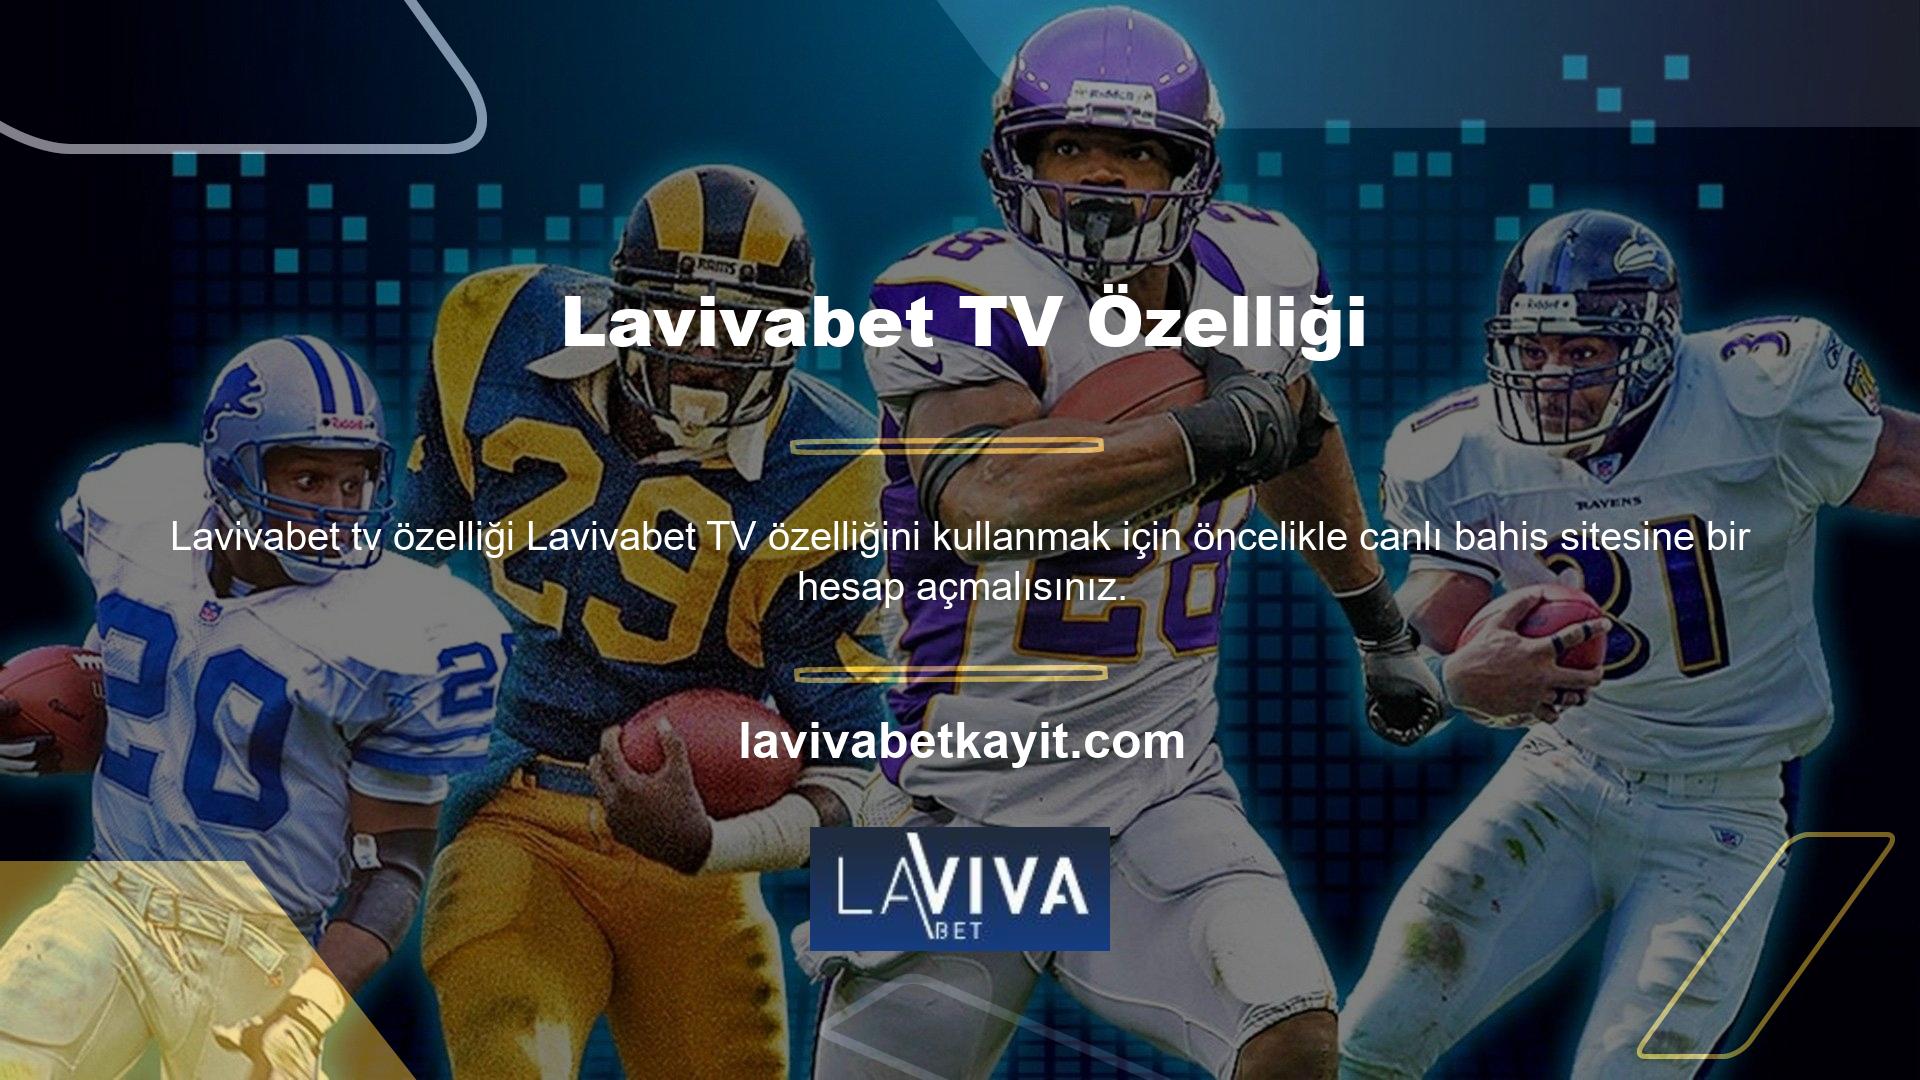 Lavivabet, casino sektörünün en renkli ve saygın canlı bahis sitelerinden biri olan ülkemizde yayın yapmaya devam eden lisanslı bir şirkettir